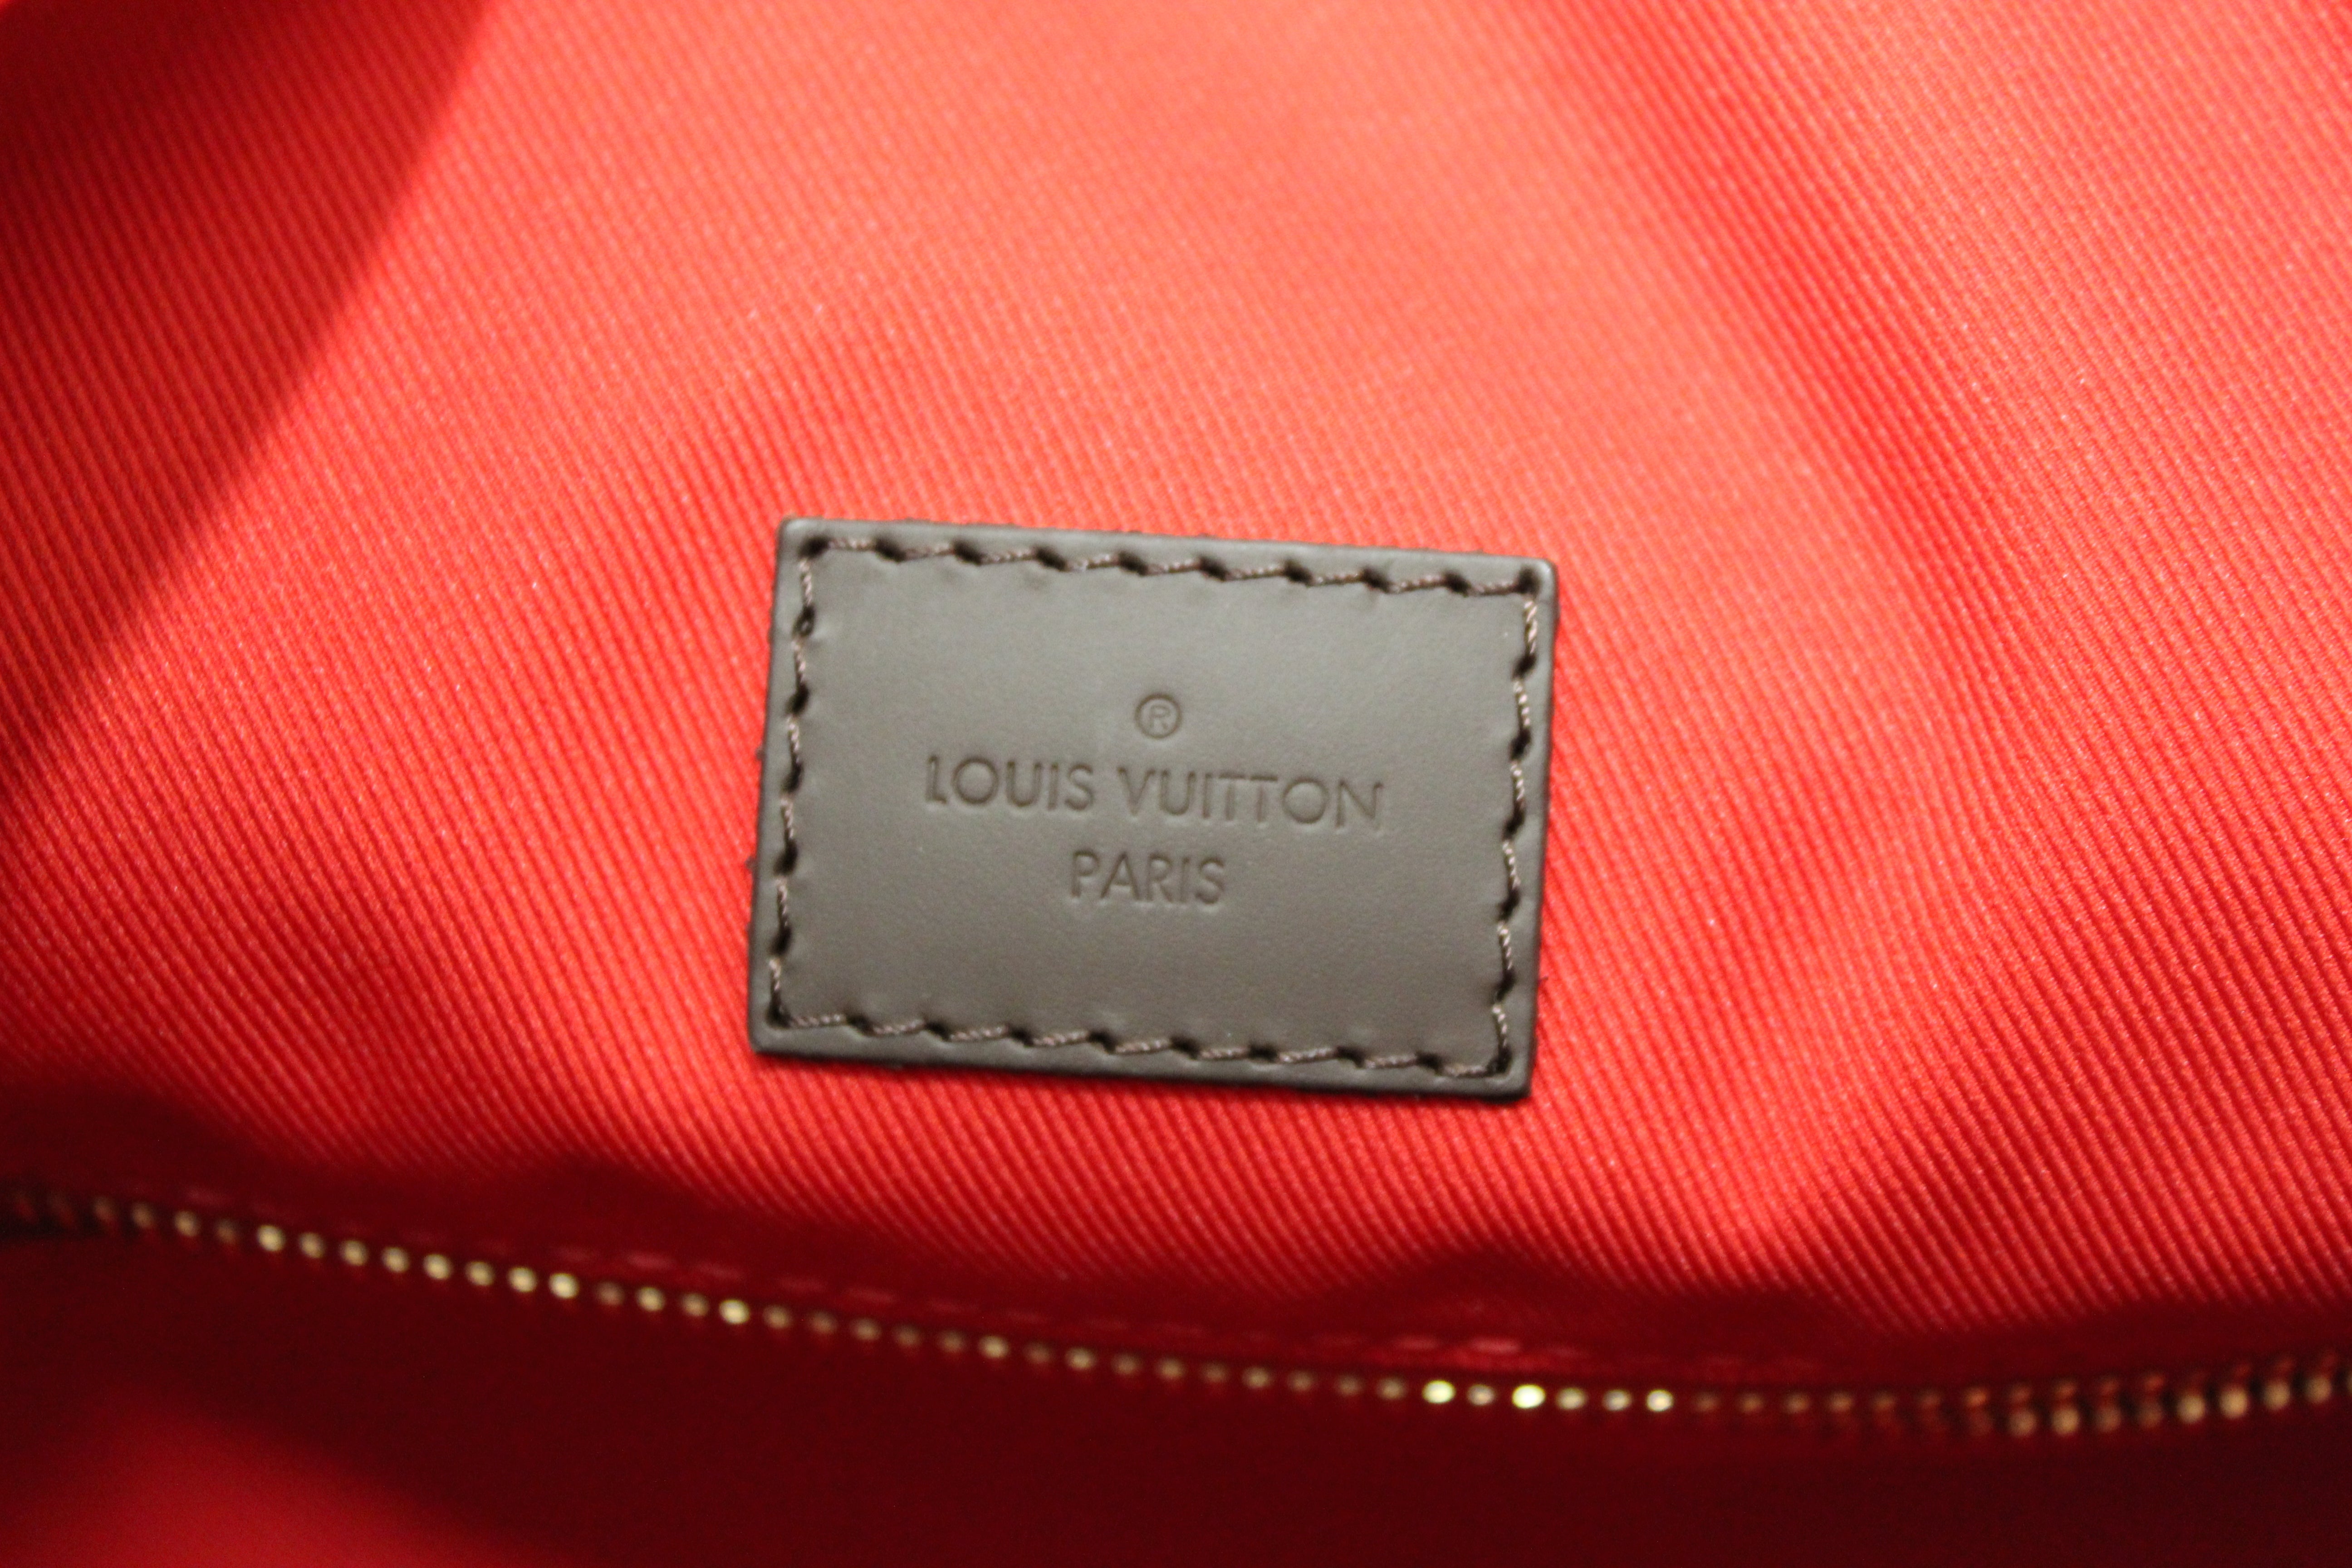 Authentic Louis Vuitton Damier Ebene Graceful MM Hobo Shoulder Bag